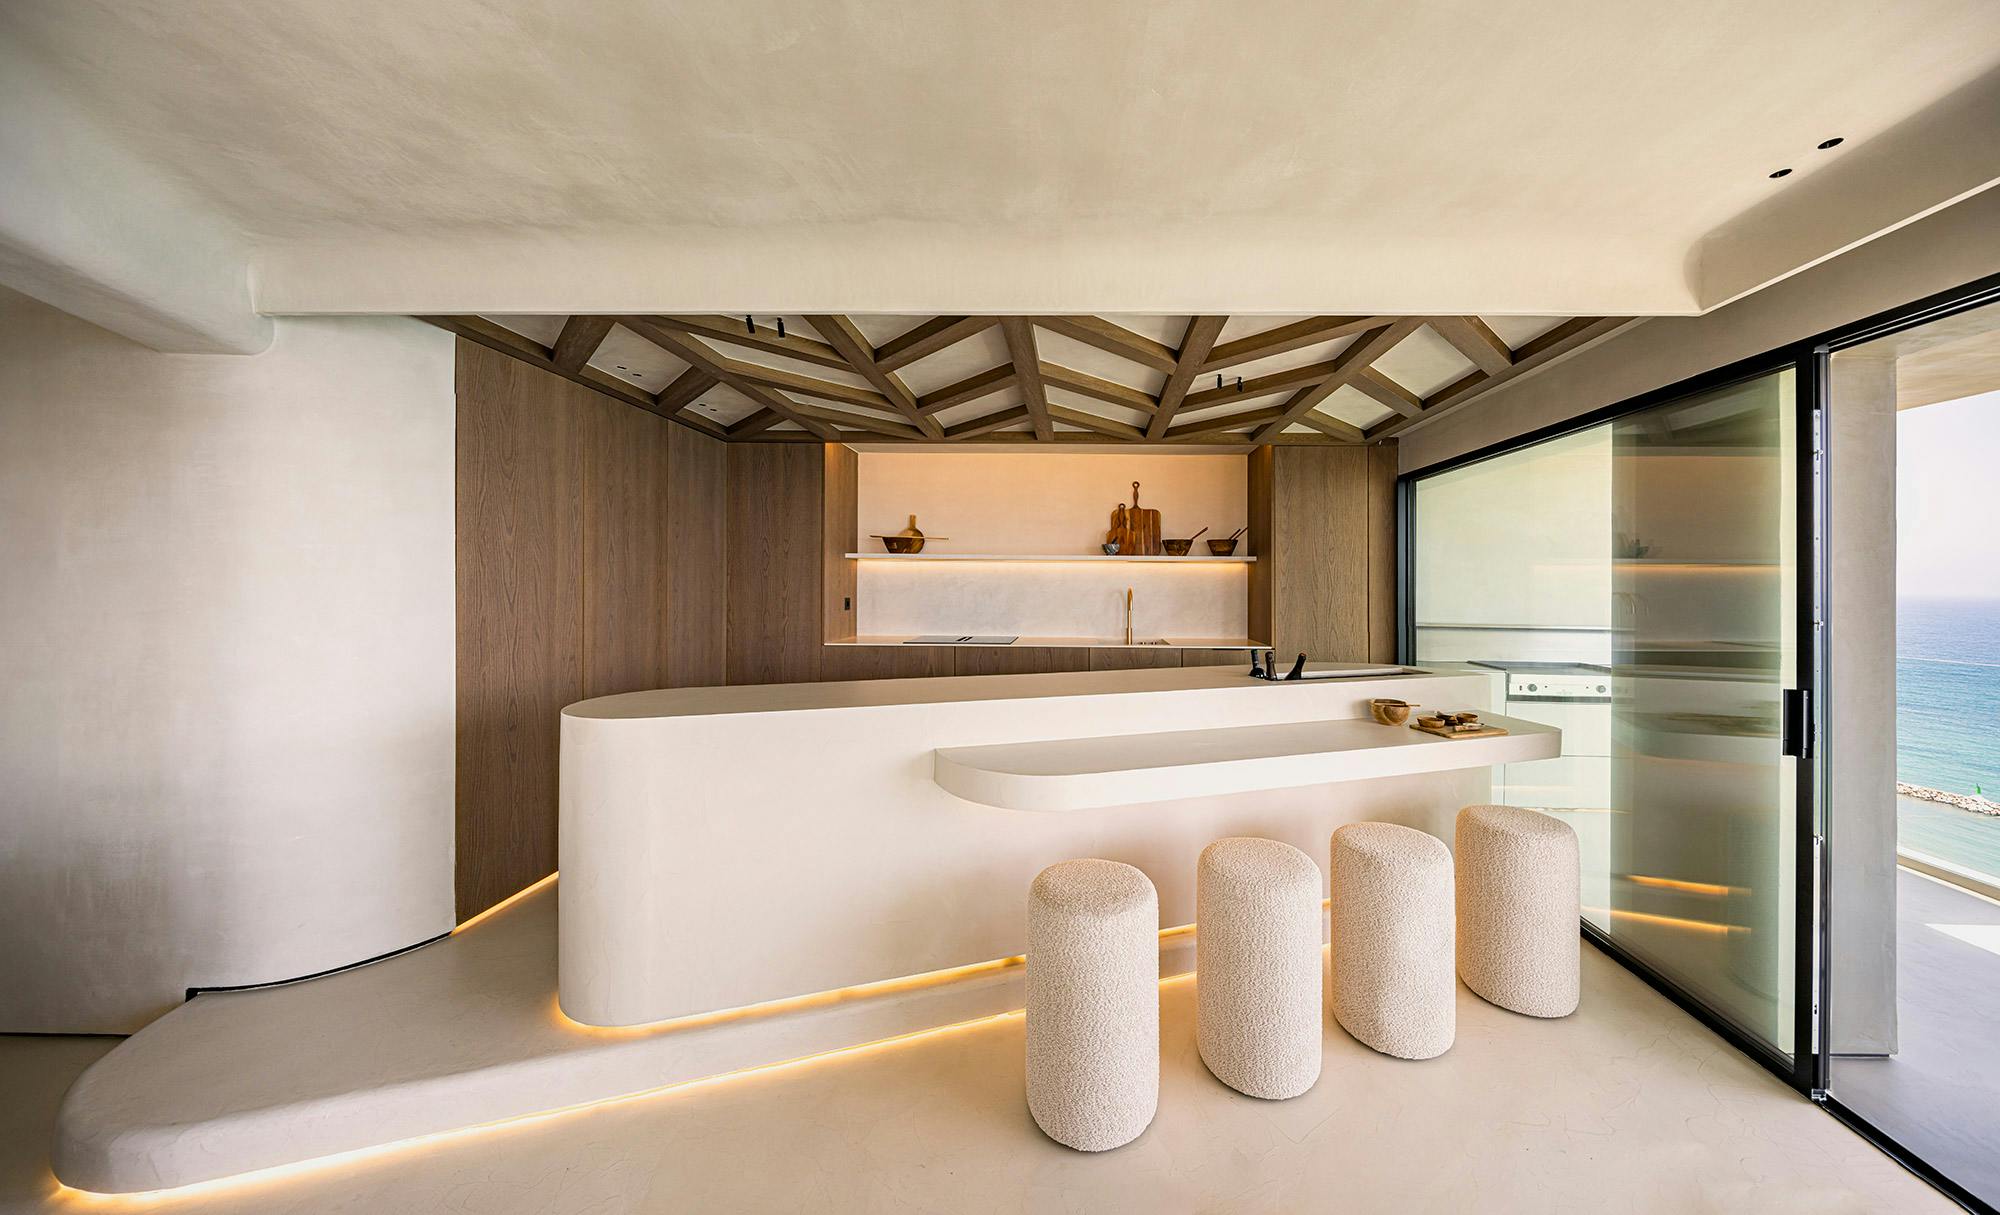 Numero immagine 39 della sezione corrente di Silestone and Dekton stand out in a minimalist, contemporary and refined interior design di Cosentino Italia